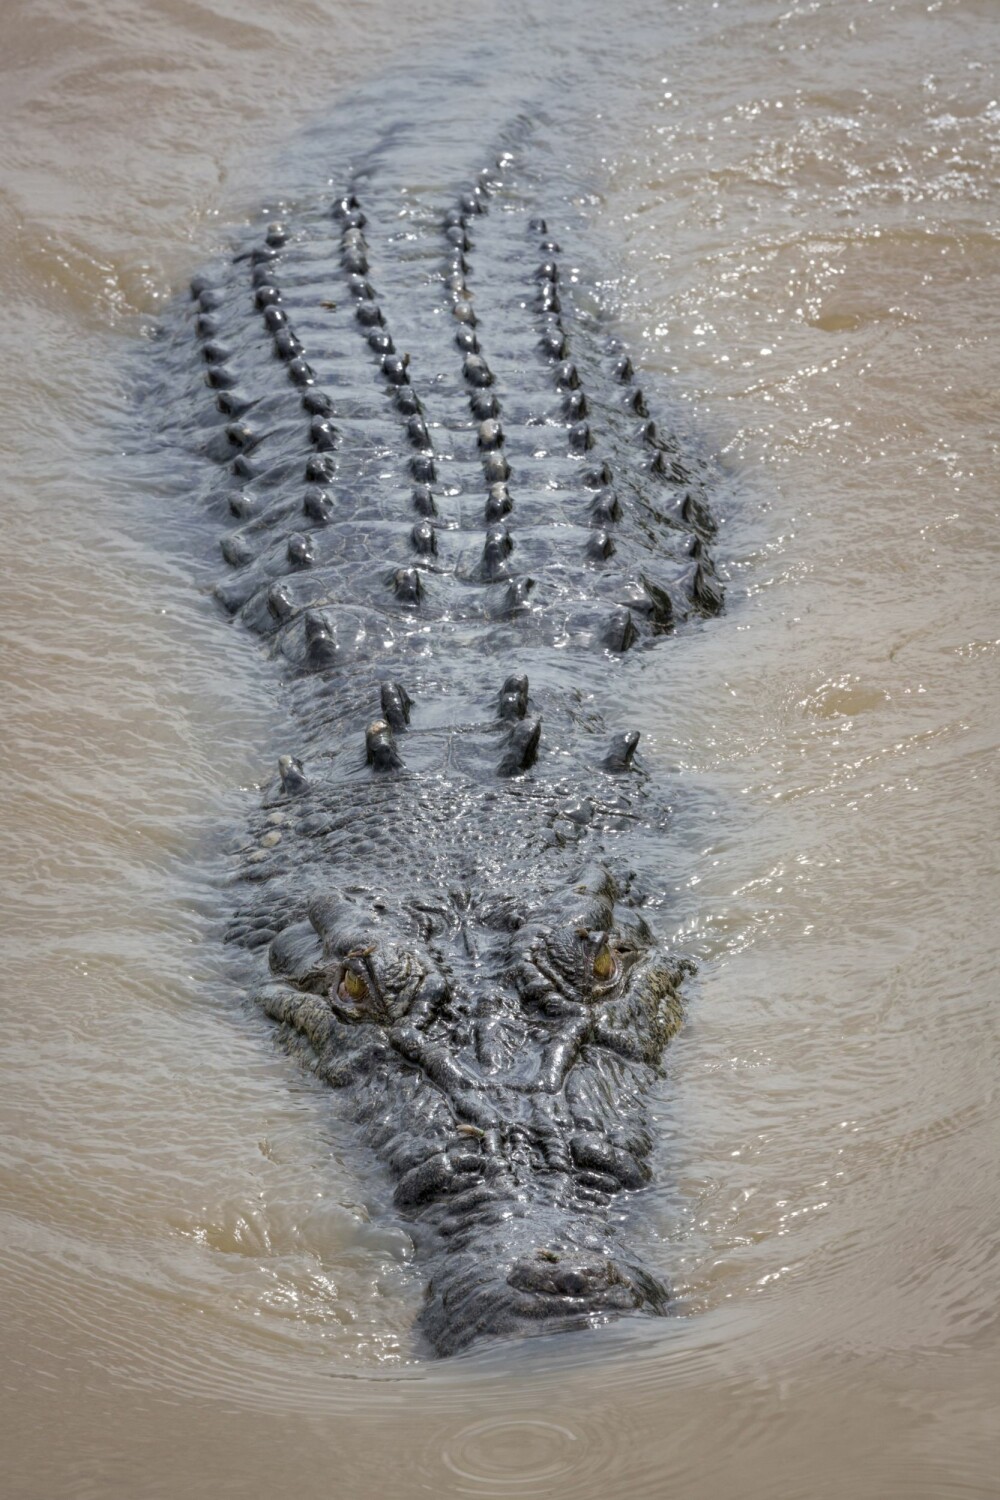 <b>SULTEN:</b> En svær australsk saltvannskrokodille i Adelaide River. En mann ble drept av en slik i 2014, da han fisket i elva. Jeg hadde ikke stilt meg opp ved elvebredden med stanga i denne elva.